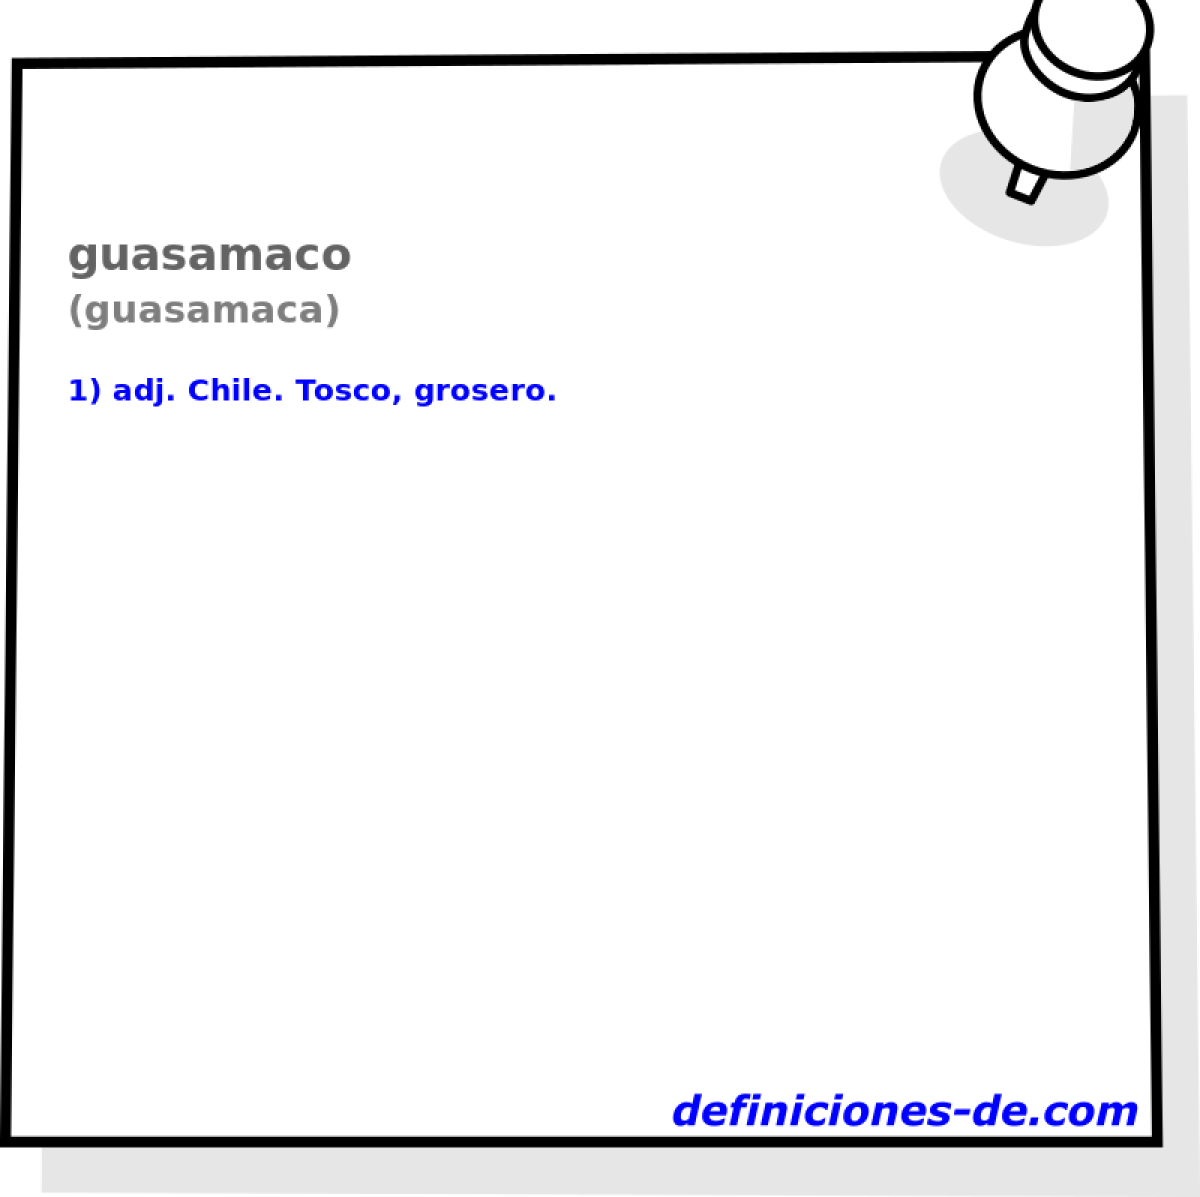 guasamaco (guasamaca)